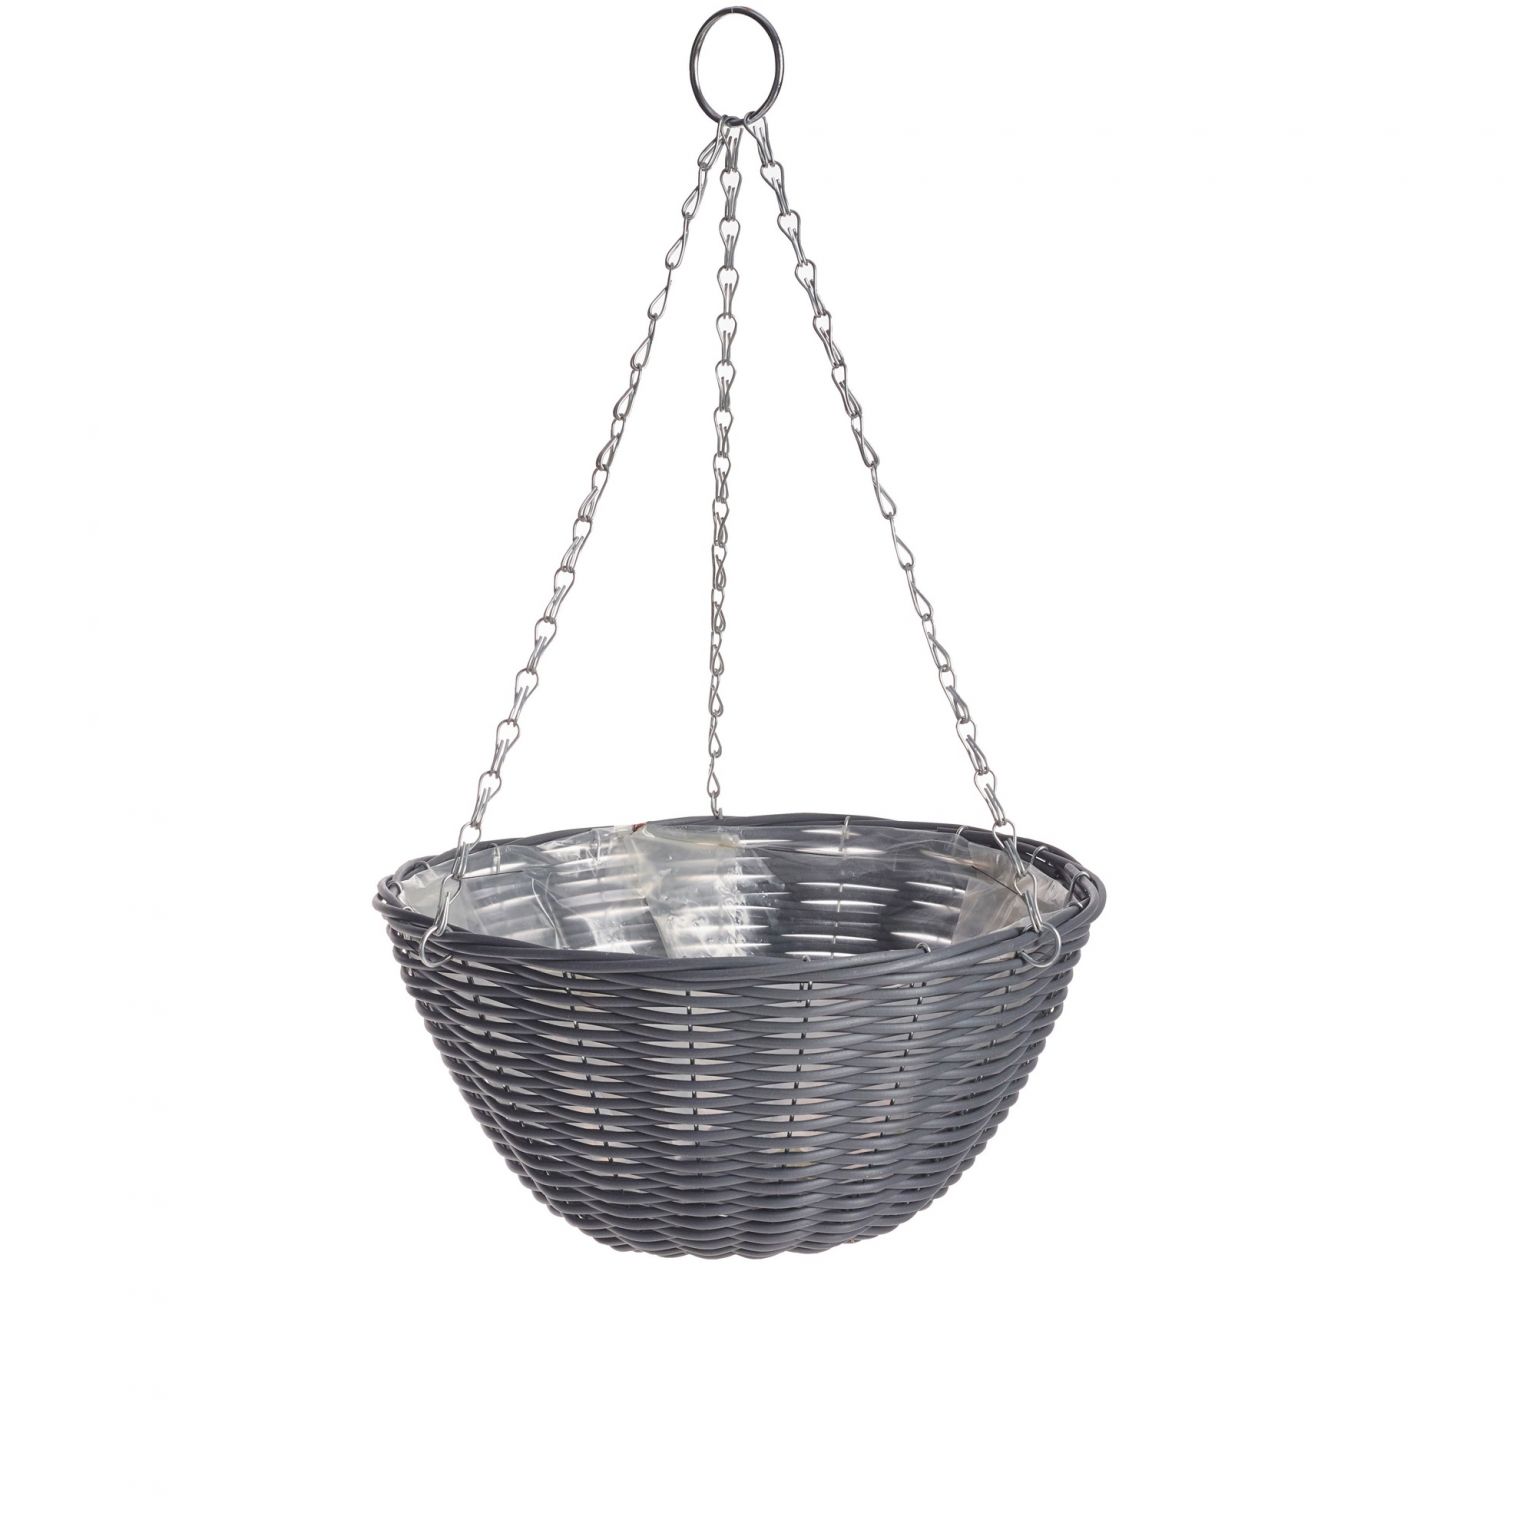 Gardman Rattan Effect Dark Grey Round Hanging Basket 35cm (14 ...